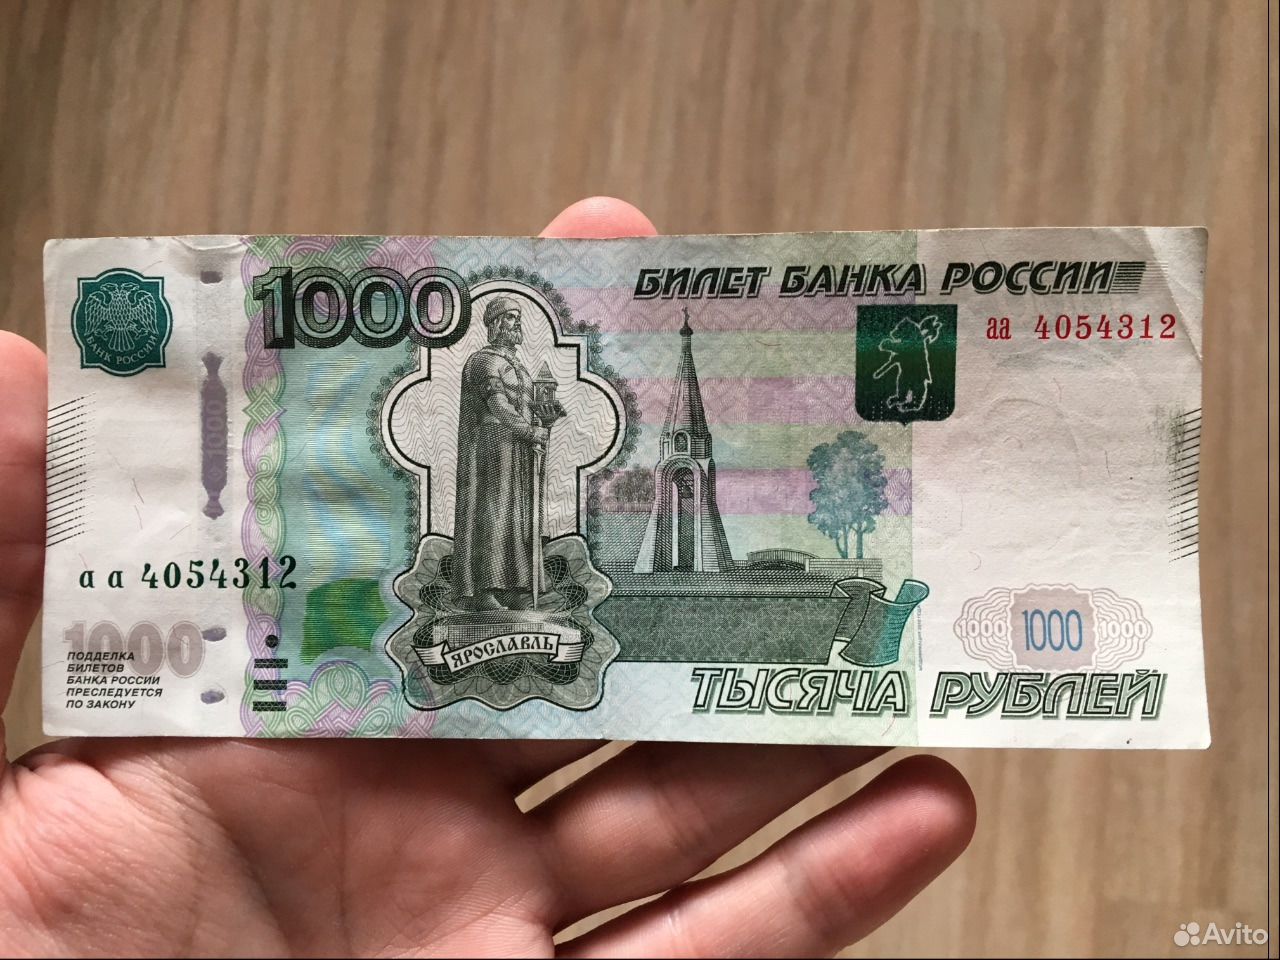 Го 1000 рублей. 1000 Рублей. Купюра 1000 рублей. Банкнота 1000 рублей. Тысяча рублей в руке.